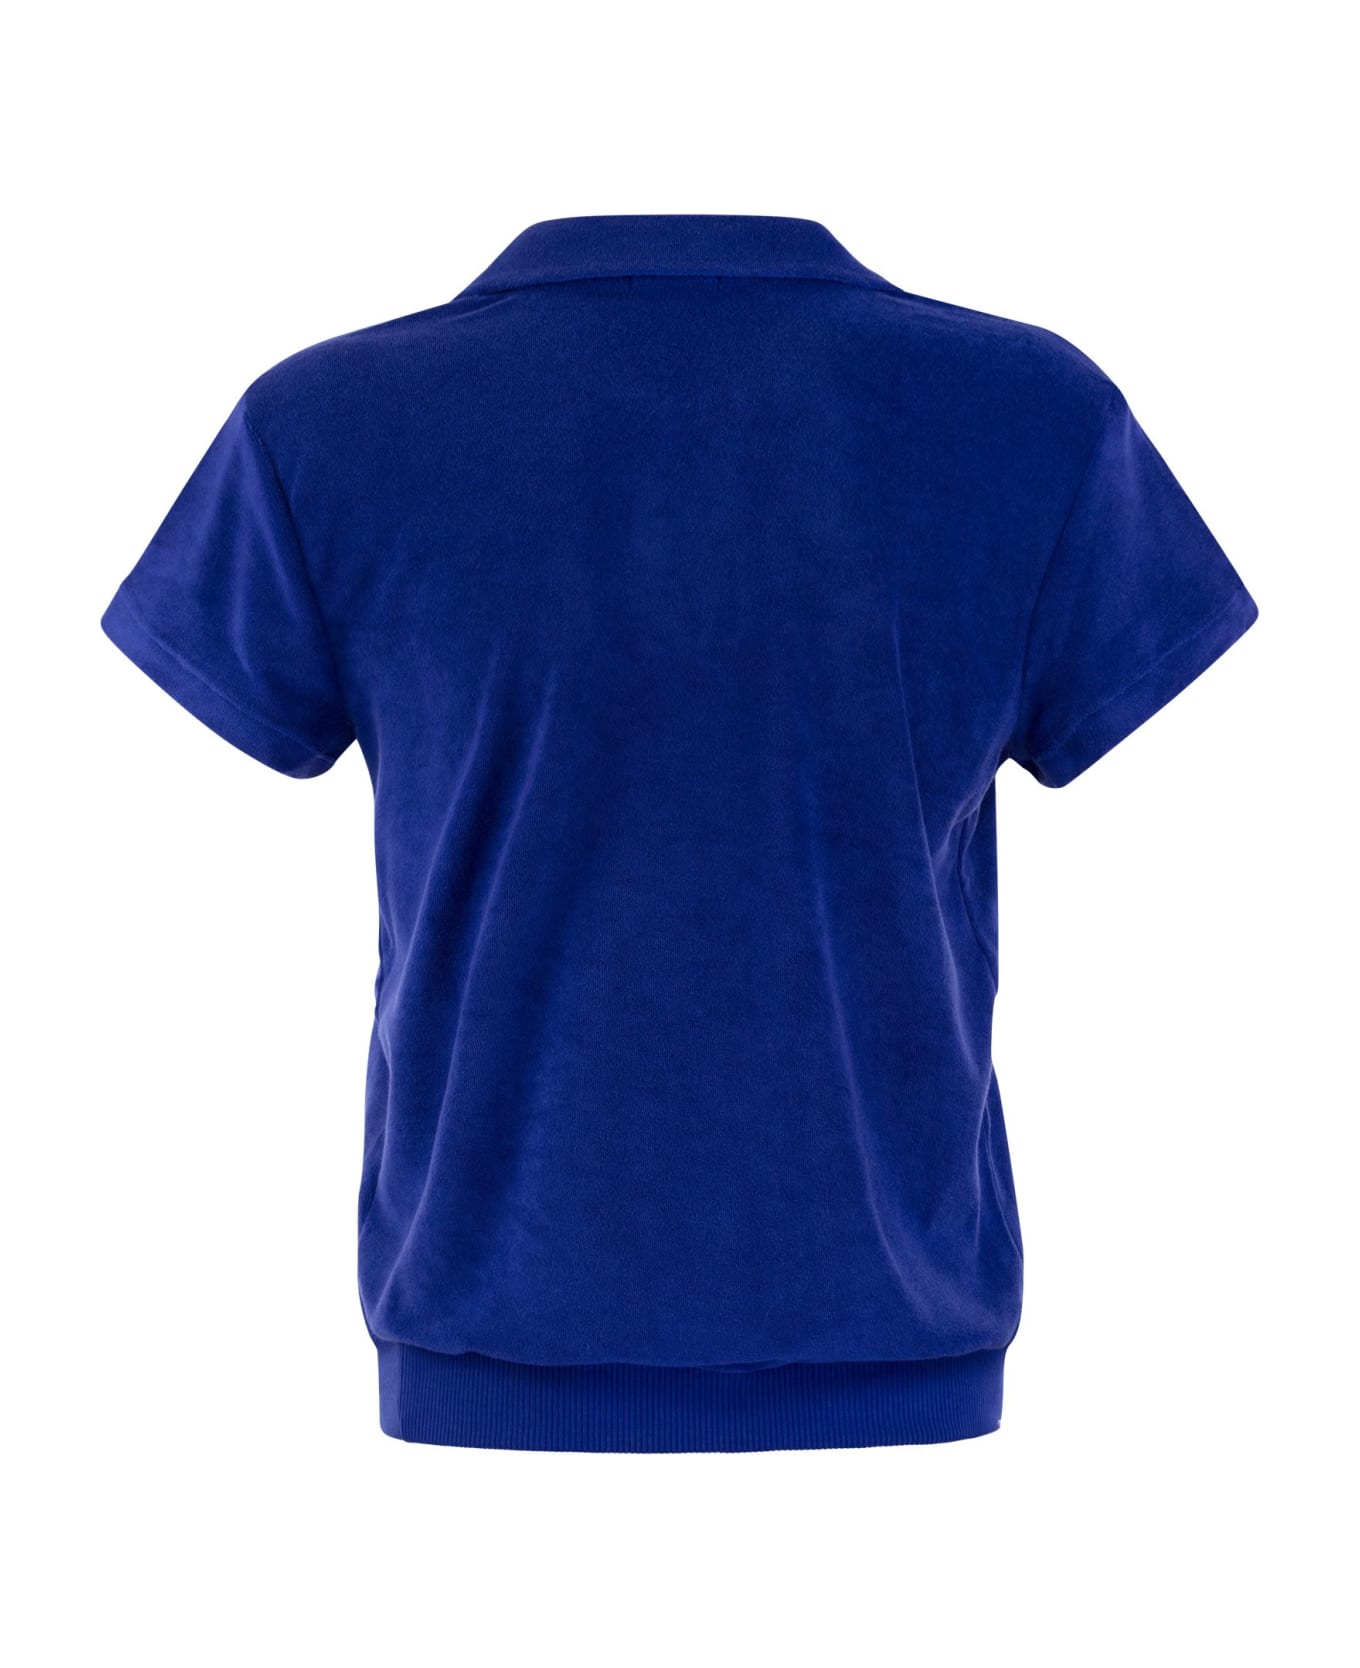 Polo Ralph Lauren Tight Terry Polo Shirt - Royal Blue